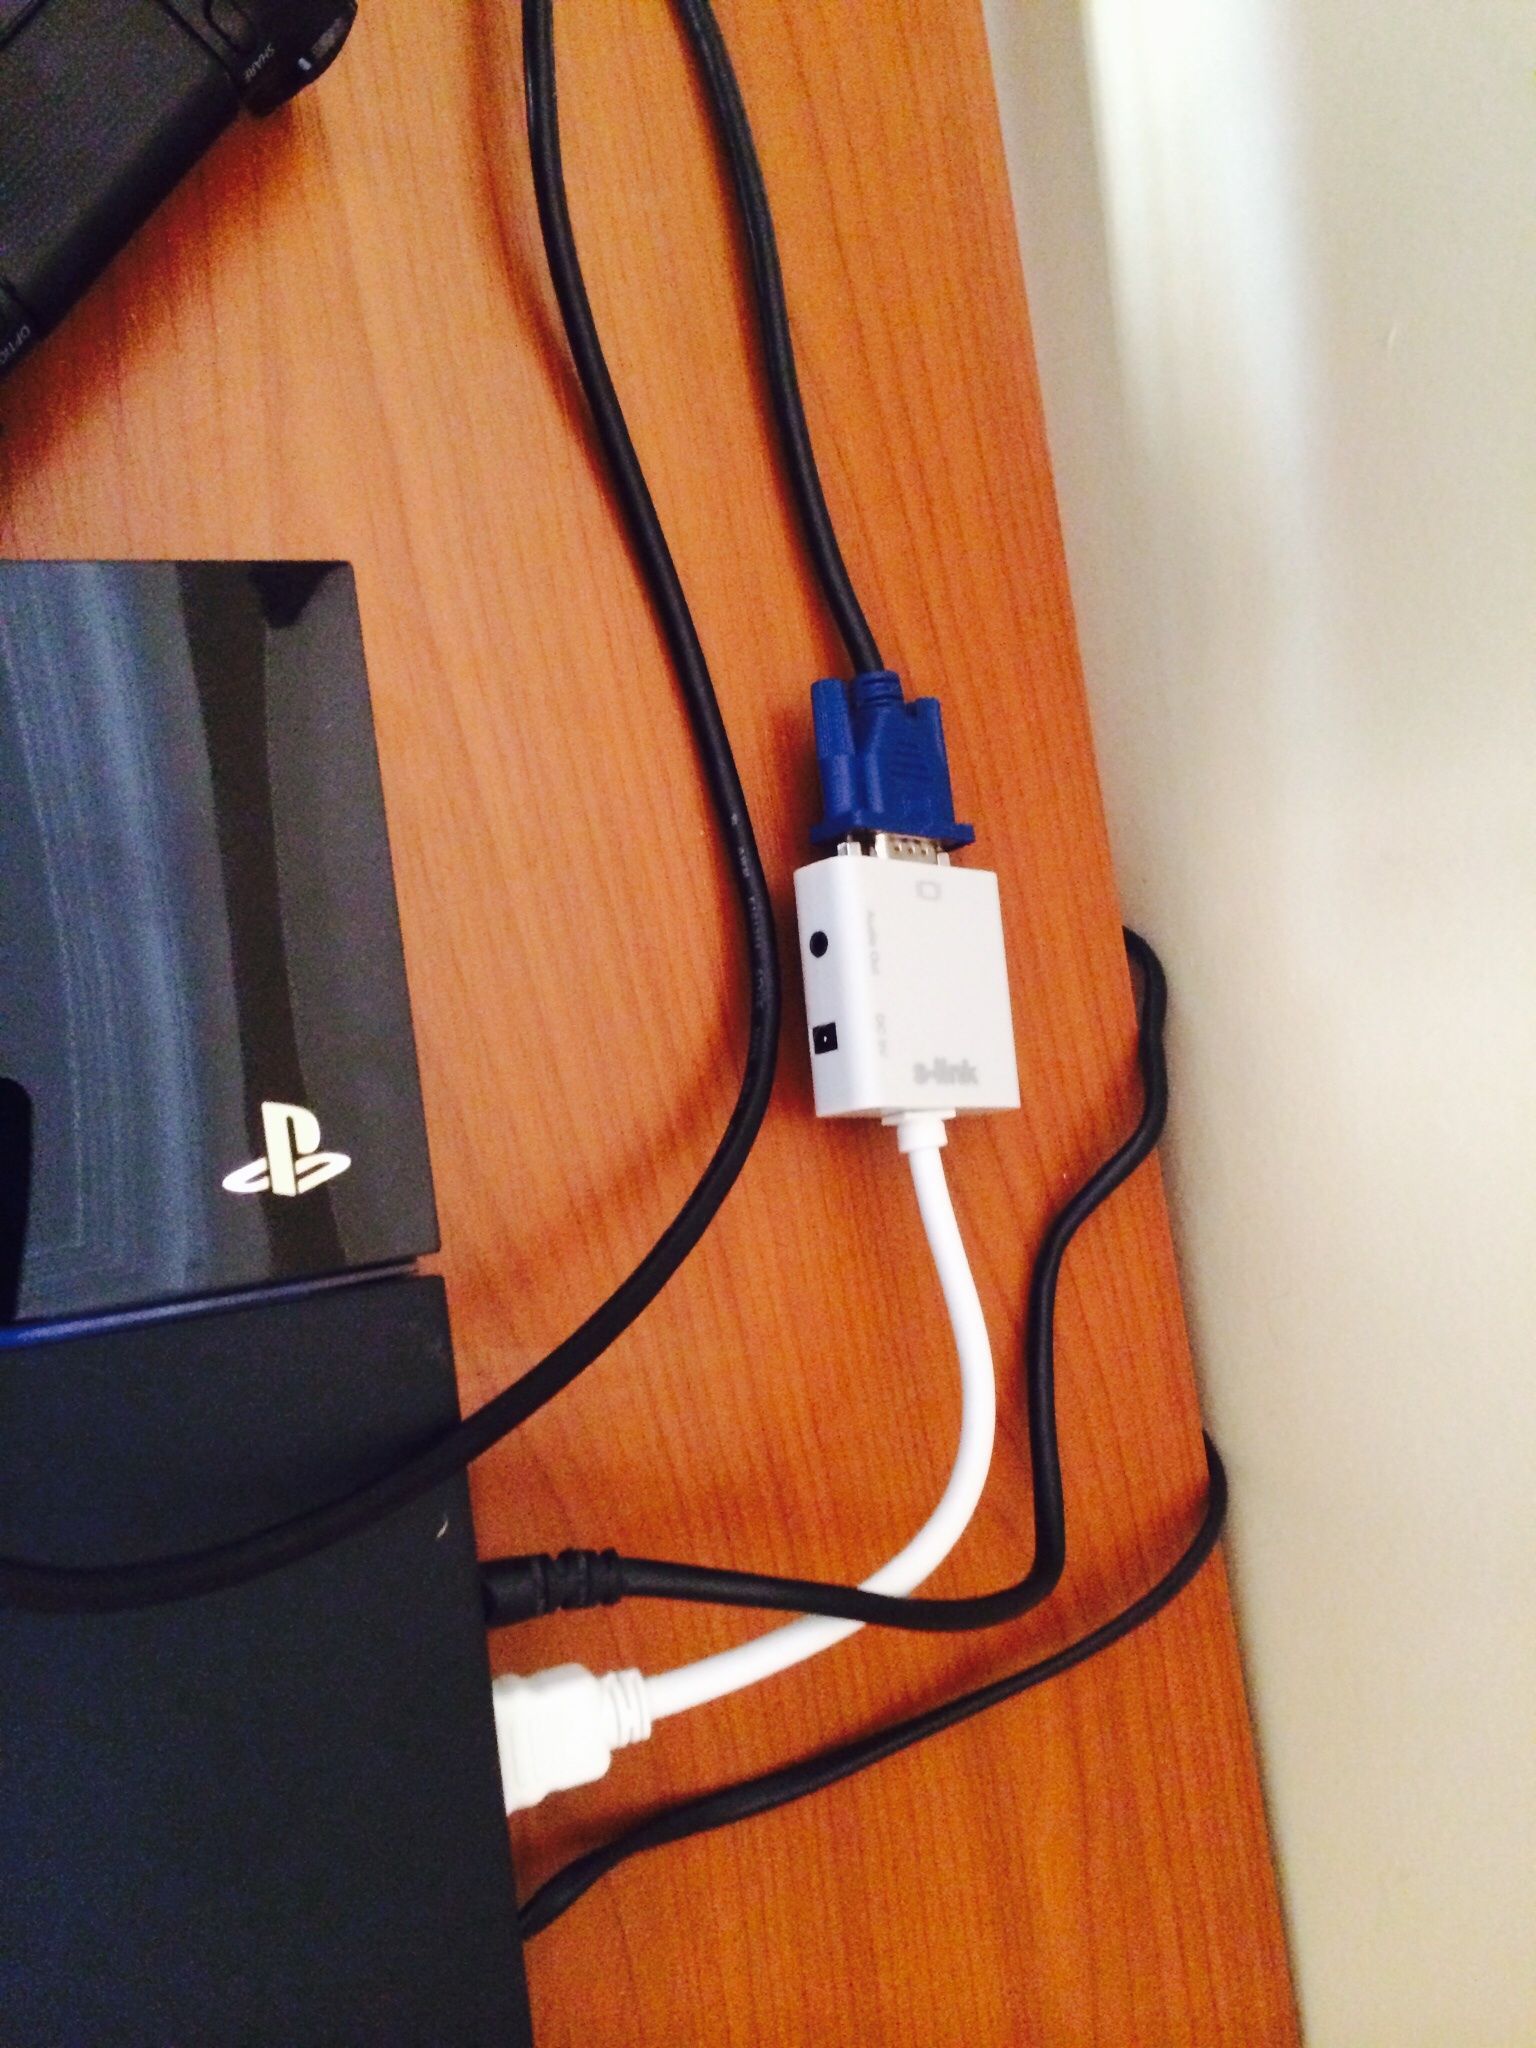 PS4 VGA Monitör Bağlantısında Görüntü Vermiyor